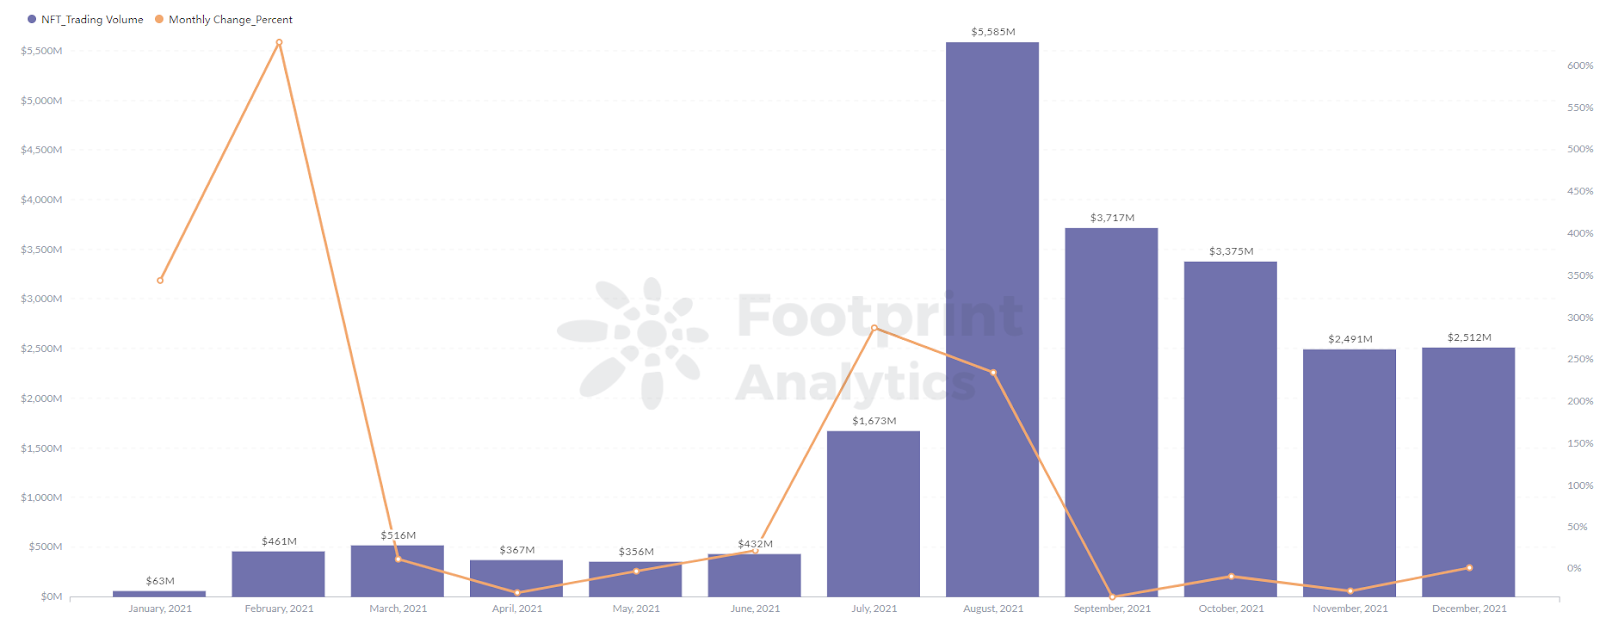 Footprint Analytics: el volumen de negociación de NFT Projects alcanzó un máximo de 5,586 millones en agosto